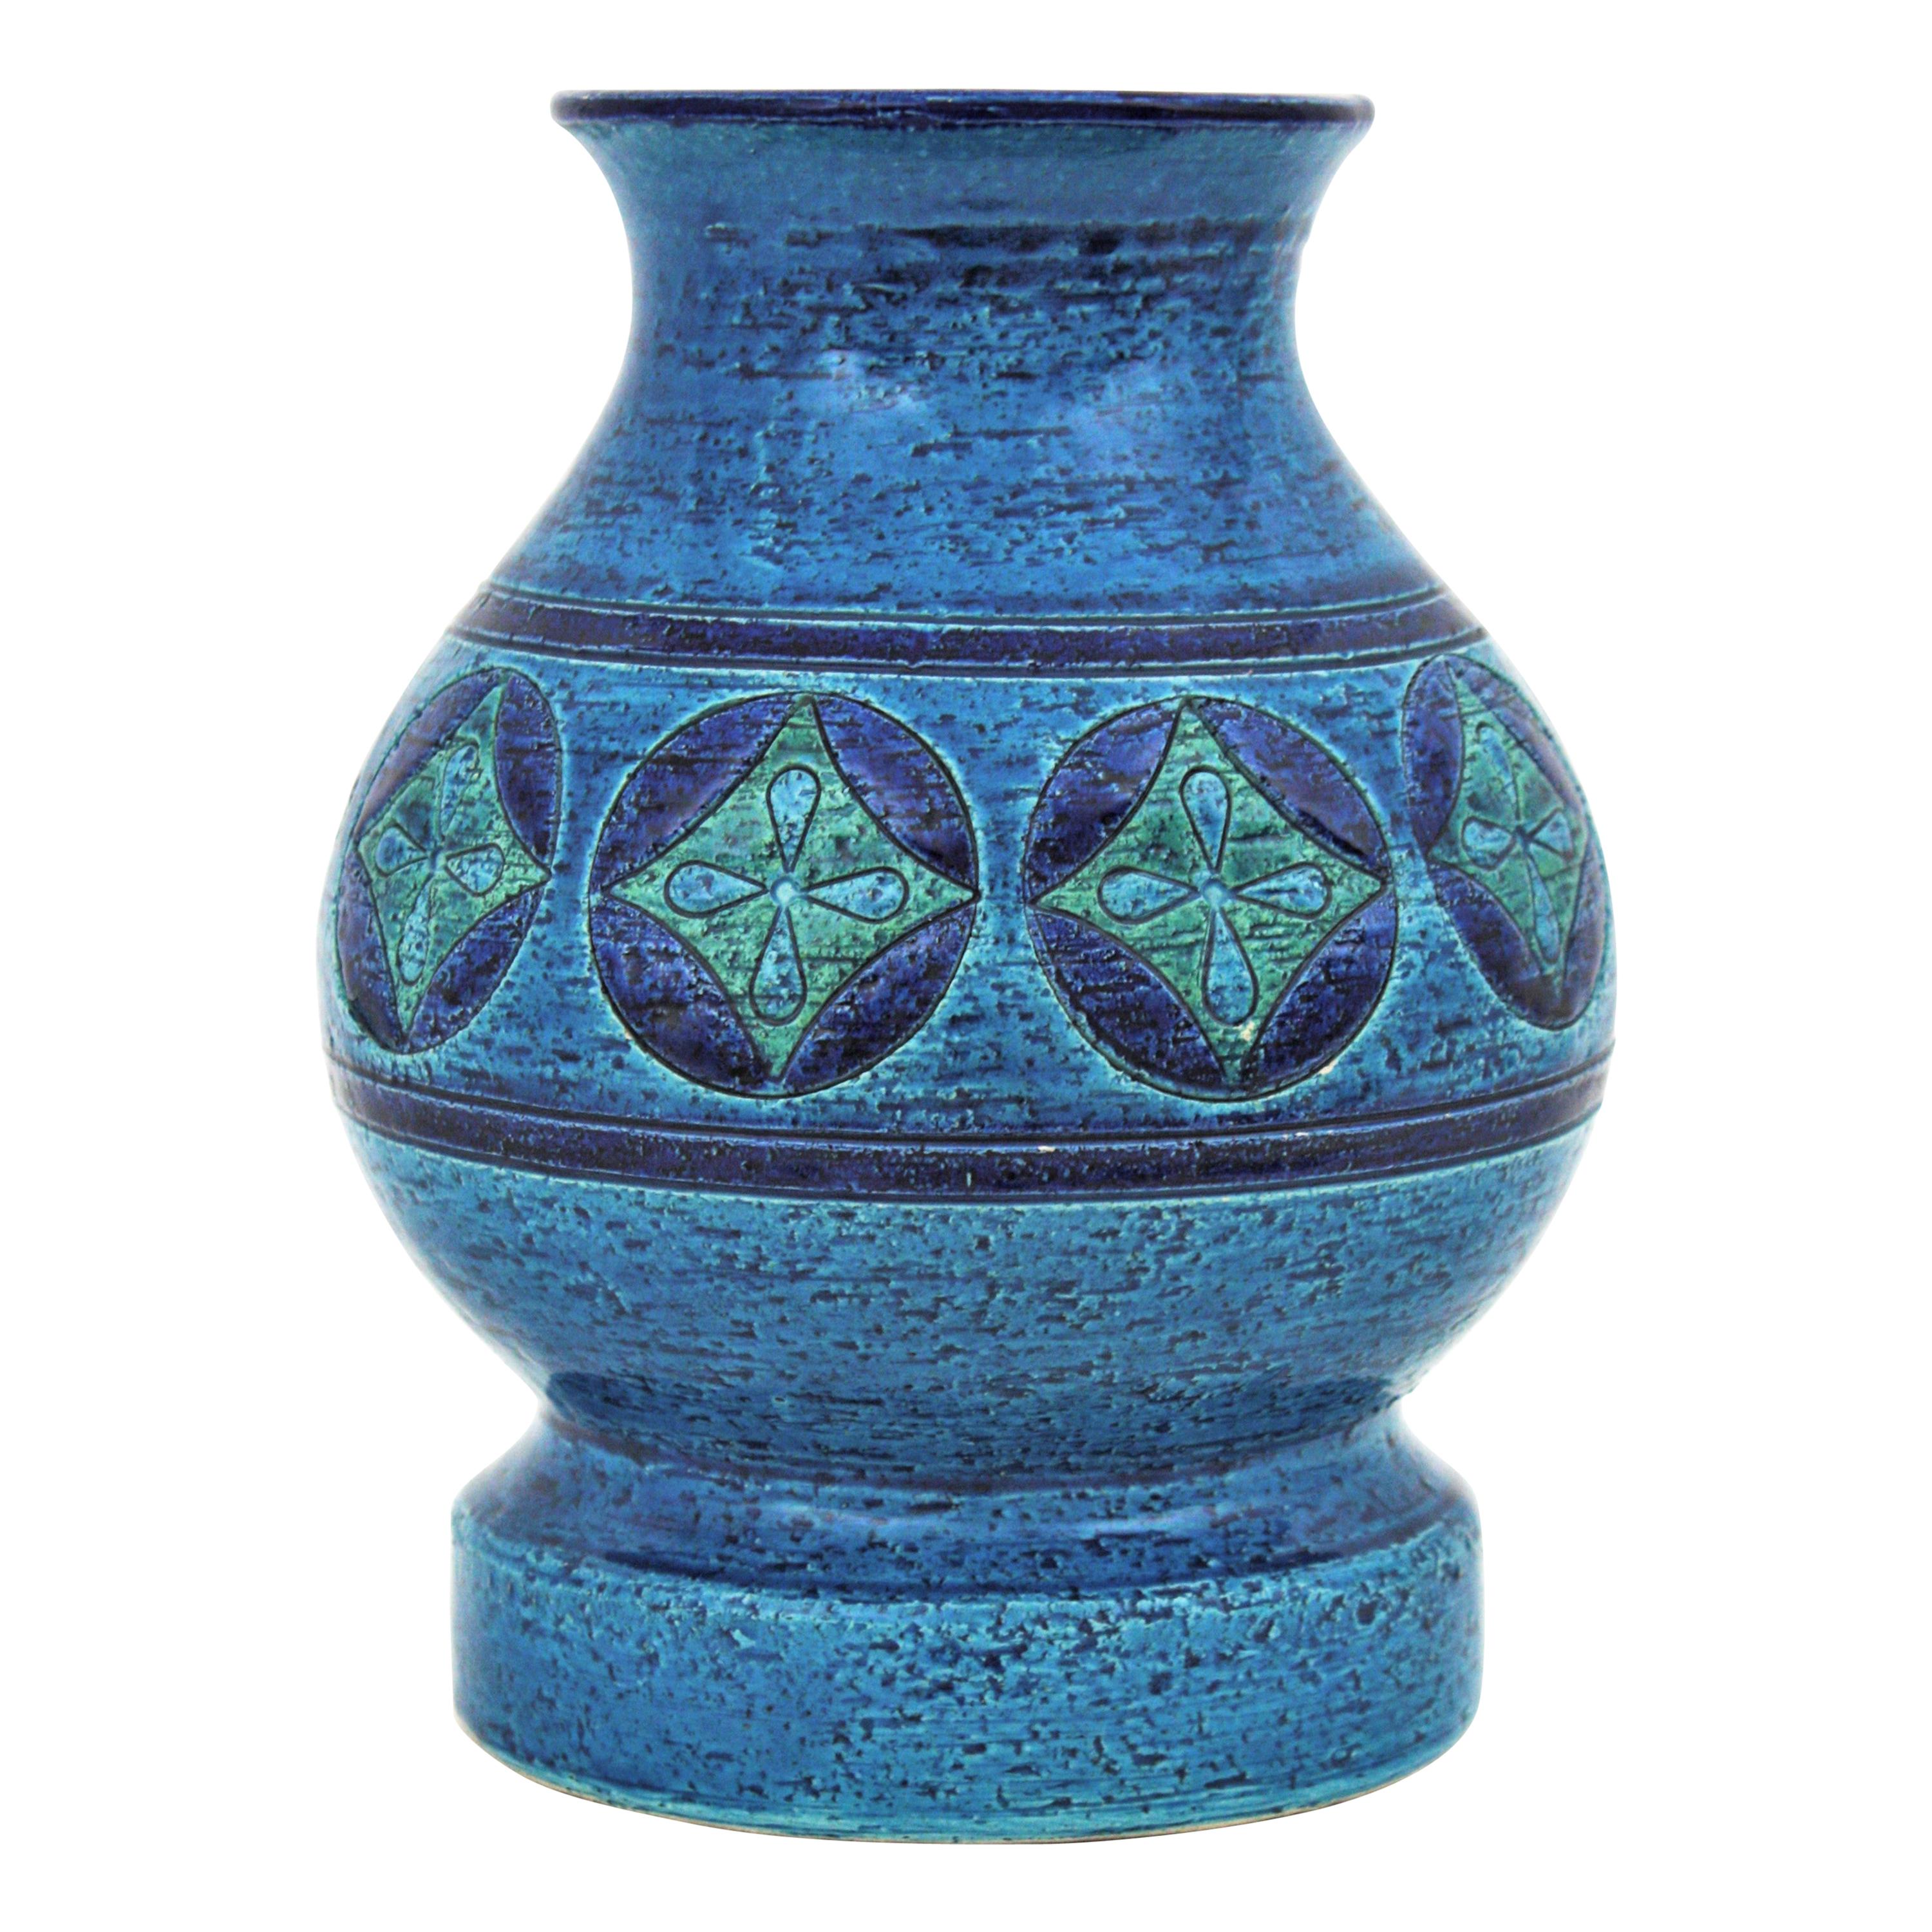 Bitossi Aldo Londi Rimini Blue Ceramic Vase, Circles and Rhombus Design